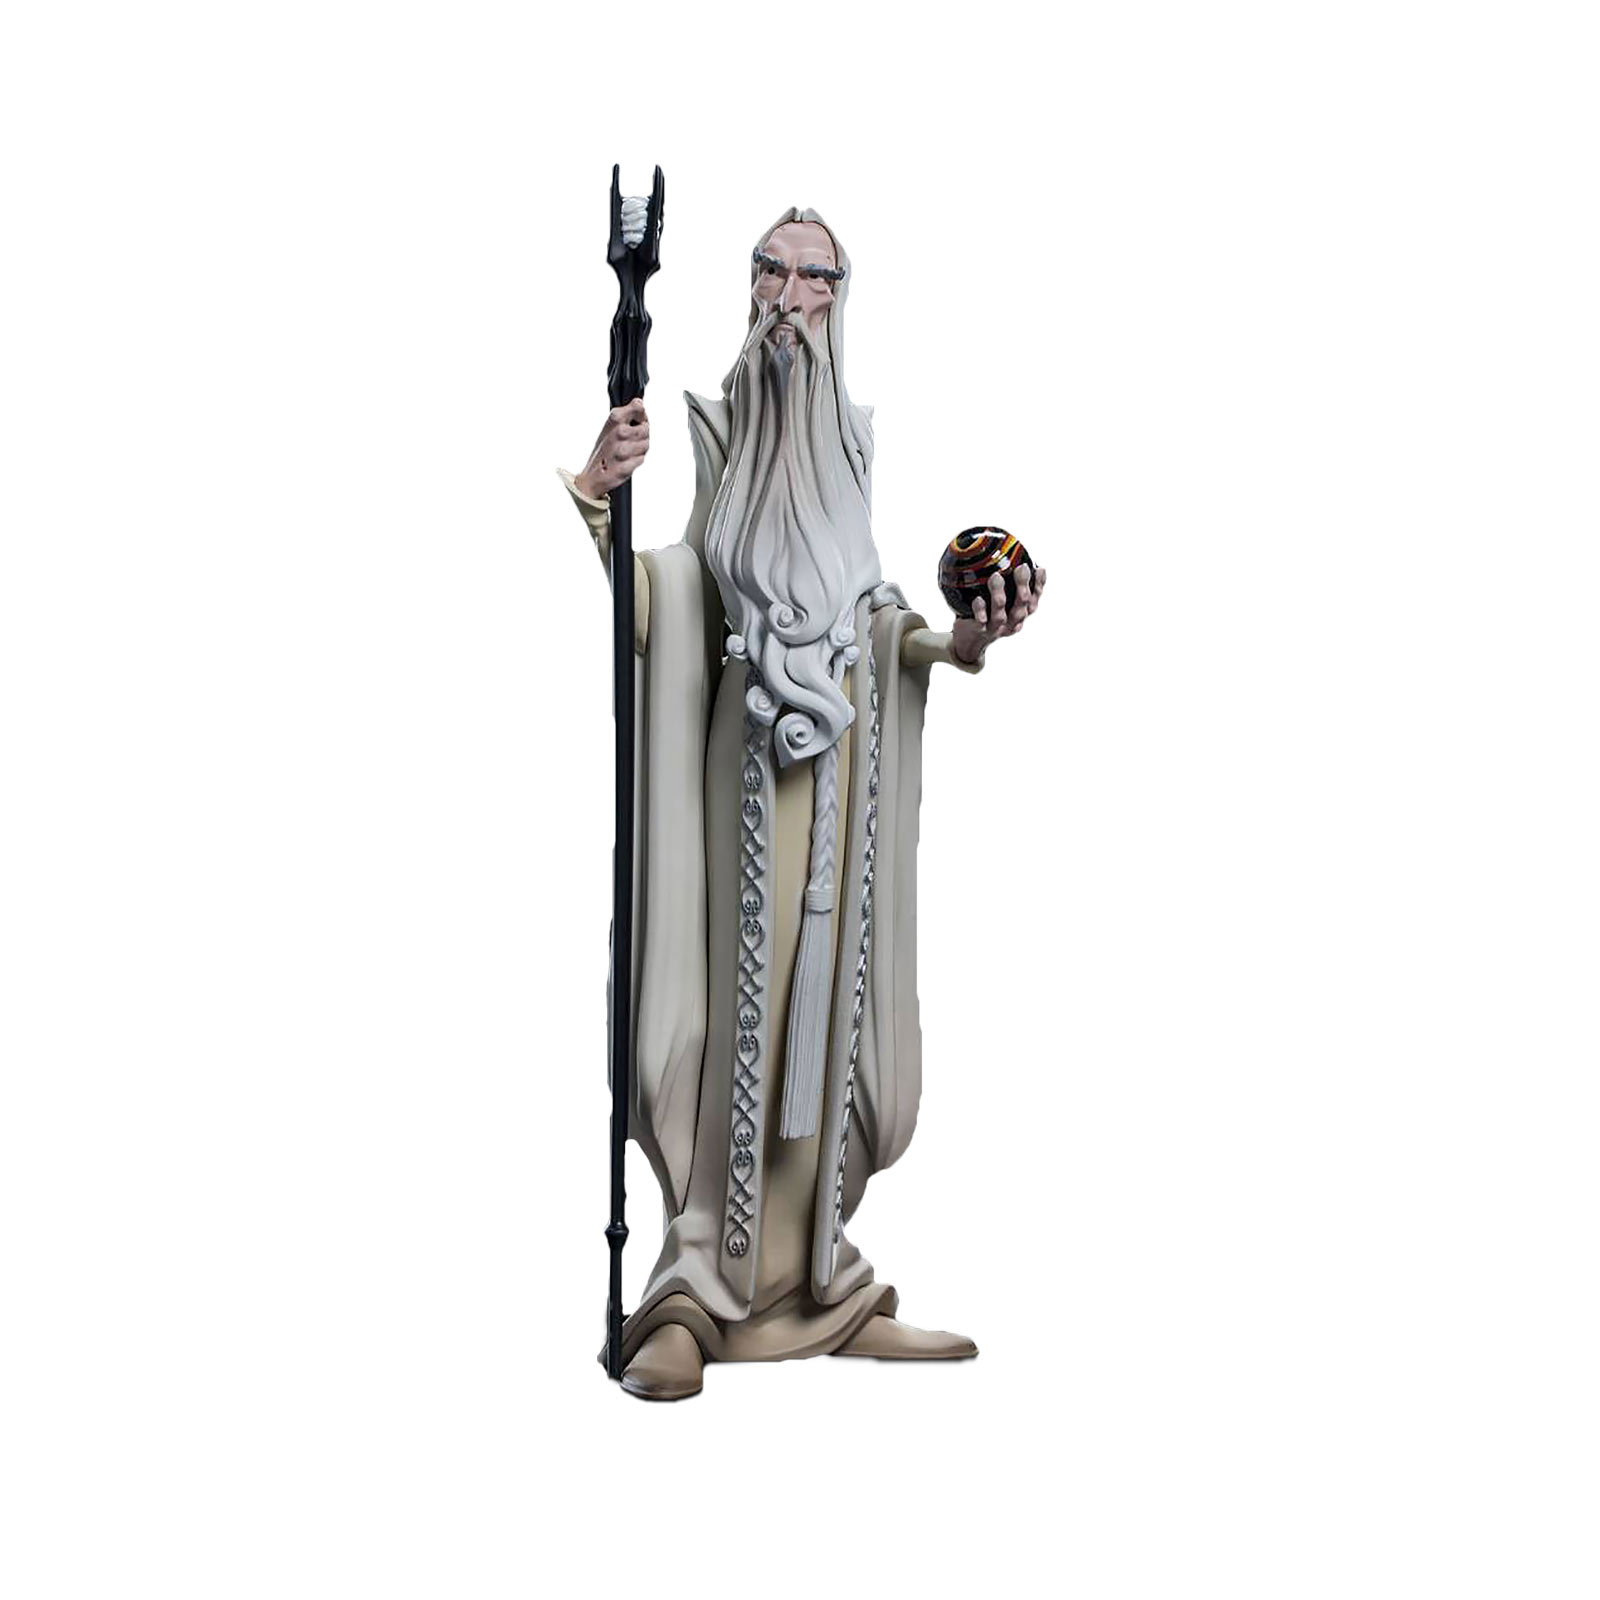 Herr der Ringe - Saruman Mini Epics Figur